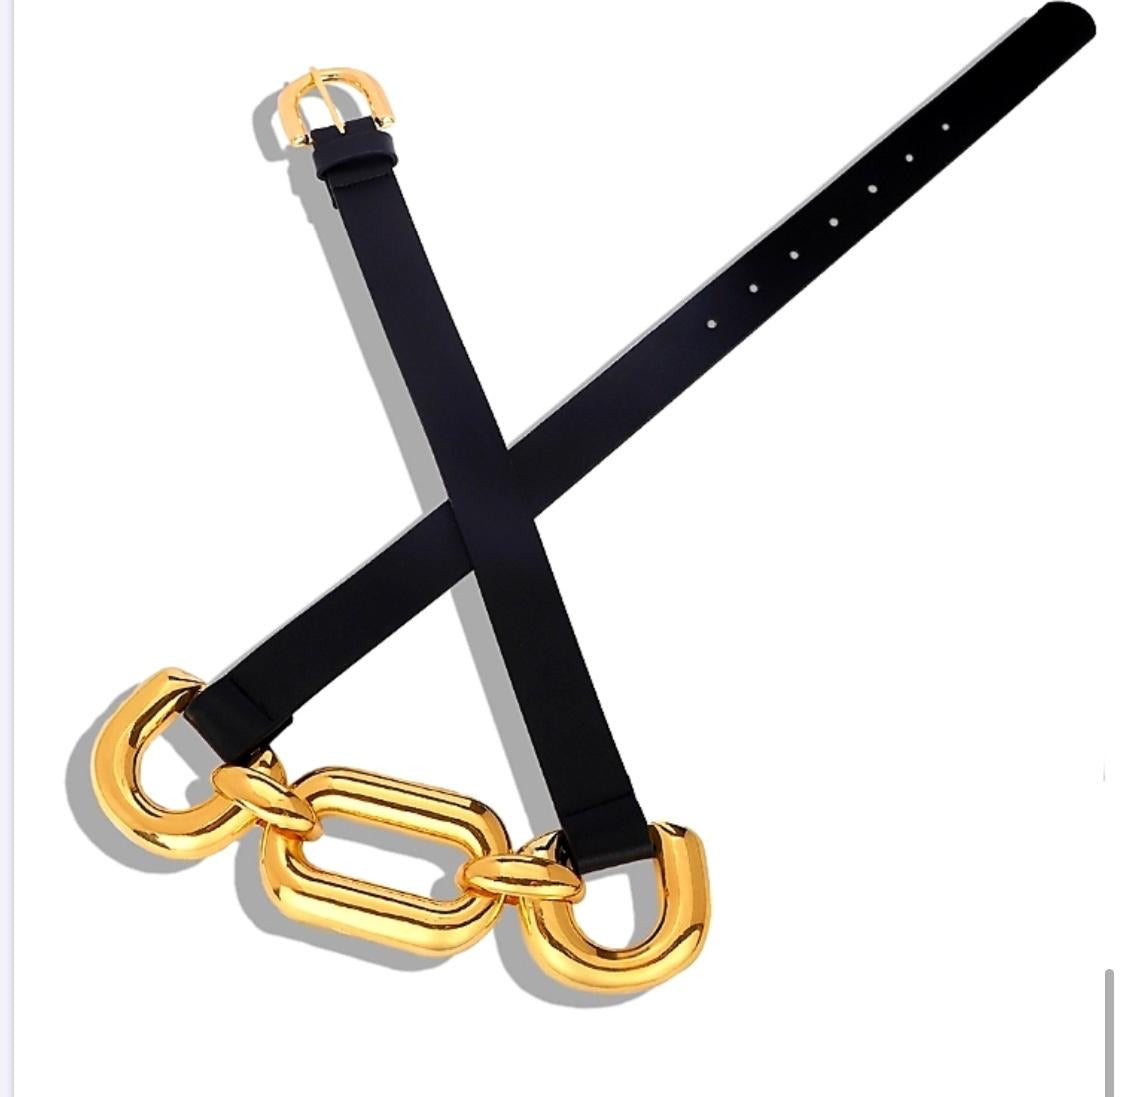 Elegant Links Belt